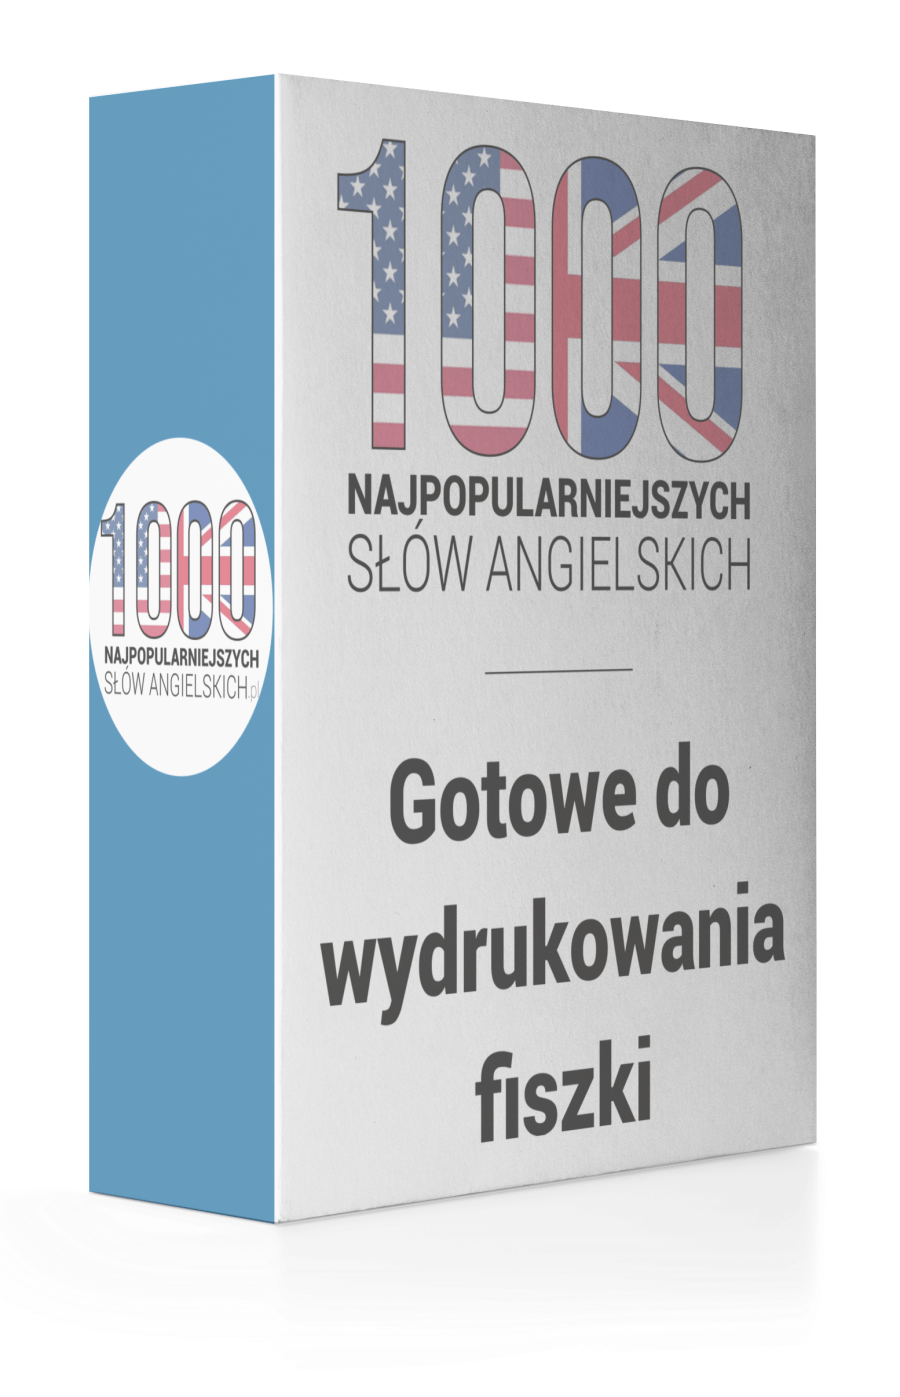 1000 Najpopularniejszych Slow Angielskich Pdf Sales Page – www.1000-najpopularniejszych-slow-angielskich.pl